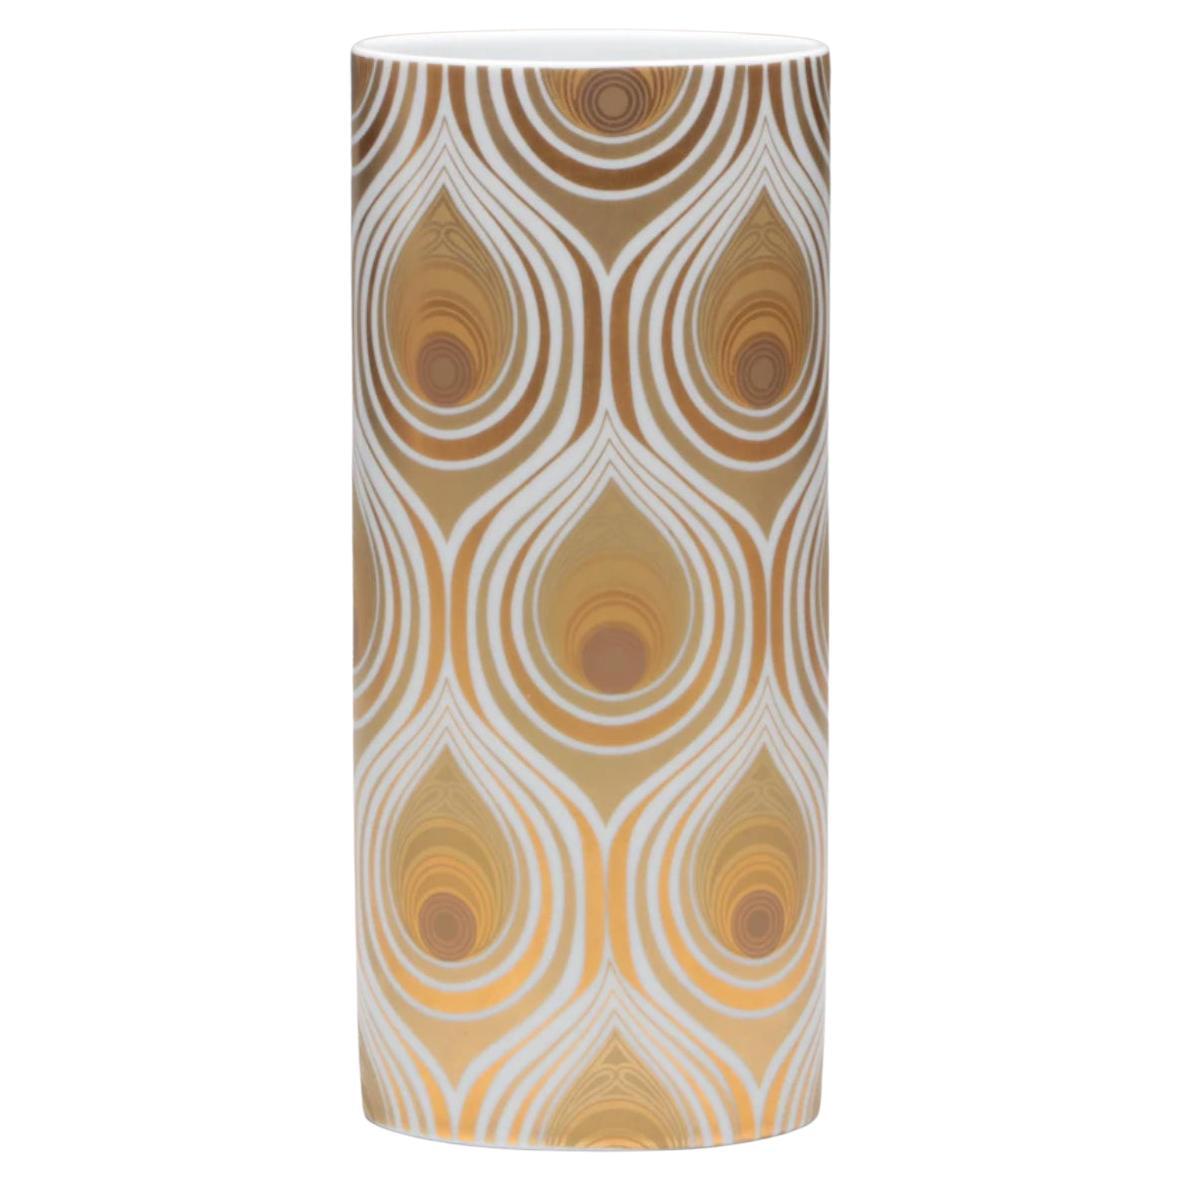 Bjørn Wiinblad for Rosenthal Studio-Linie Gold Over Porcelain Vase For Sale